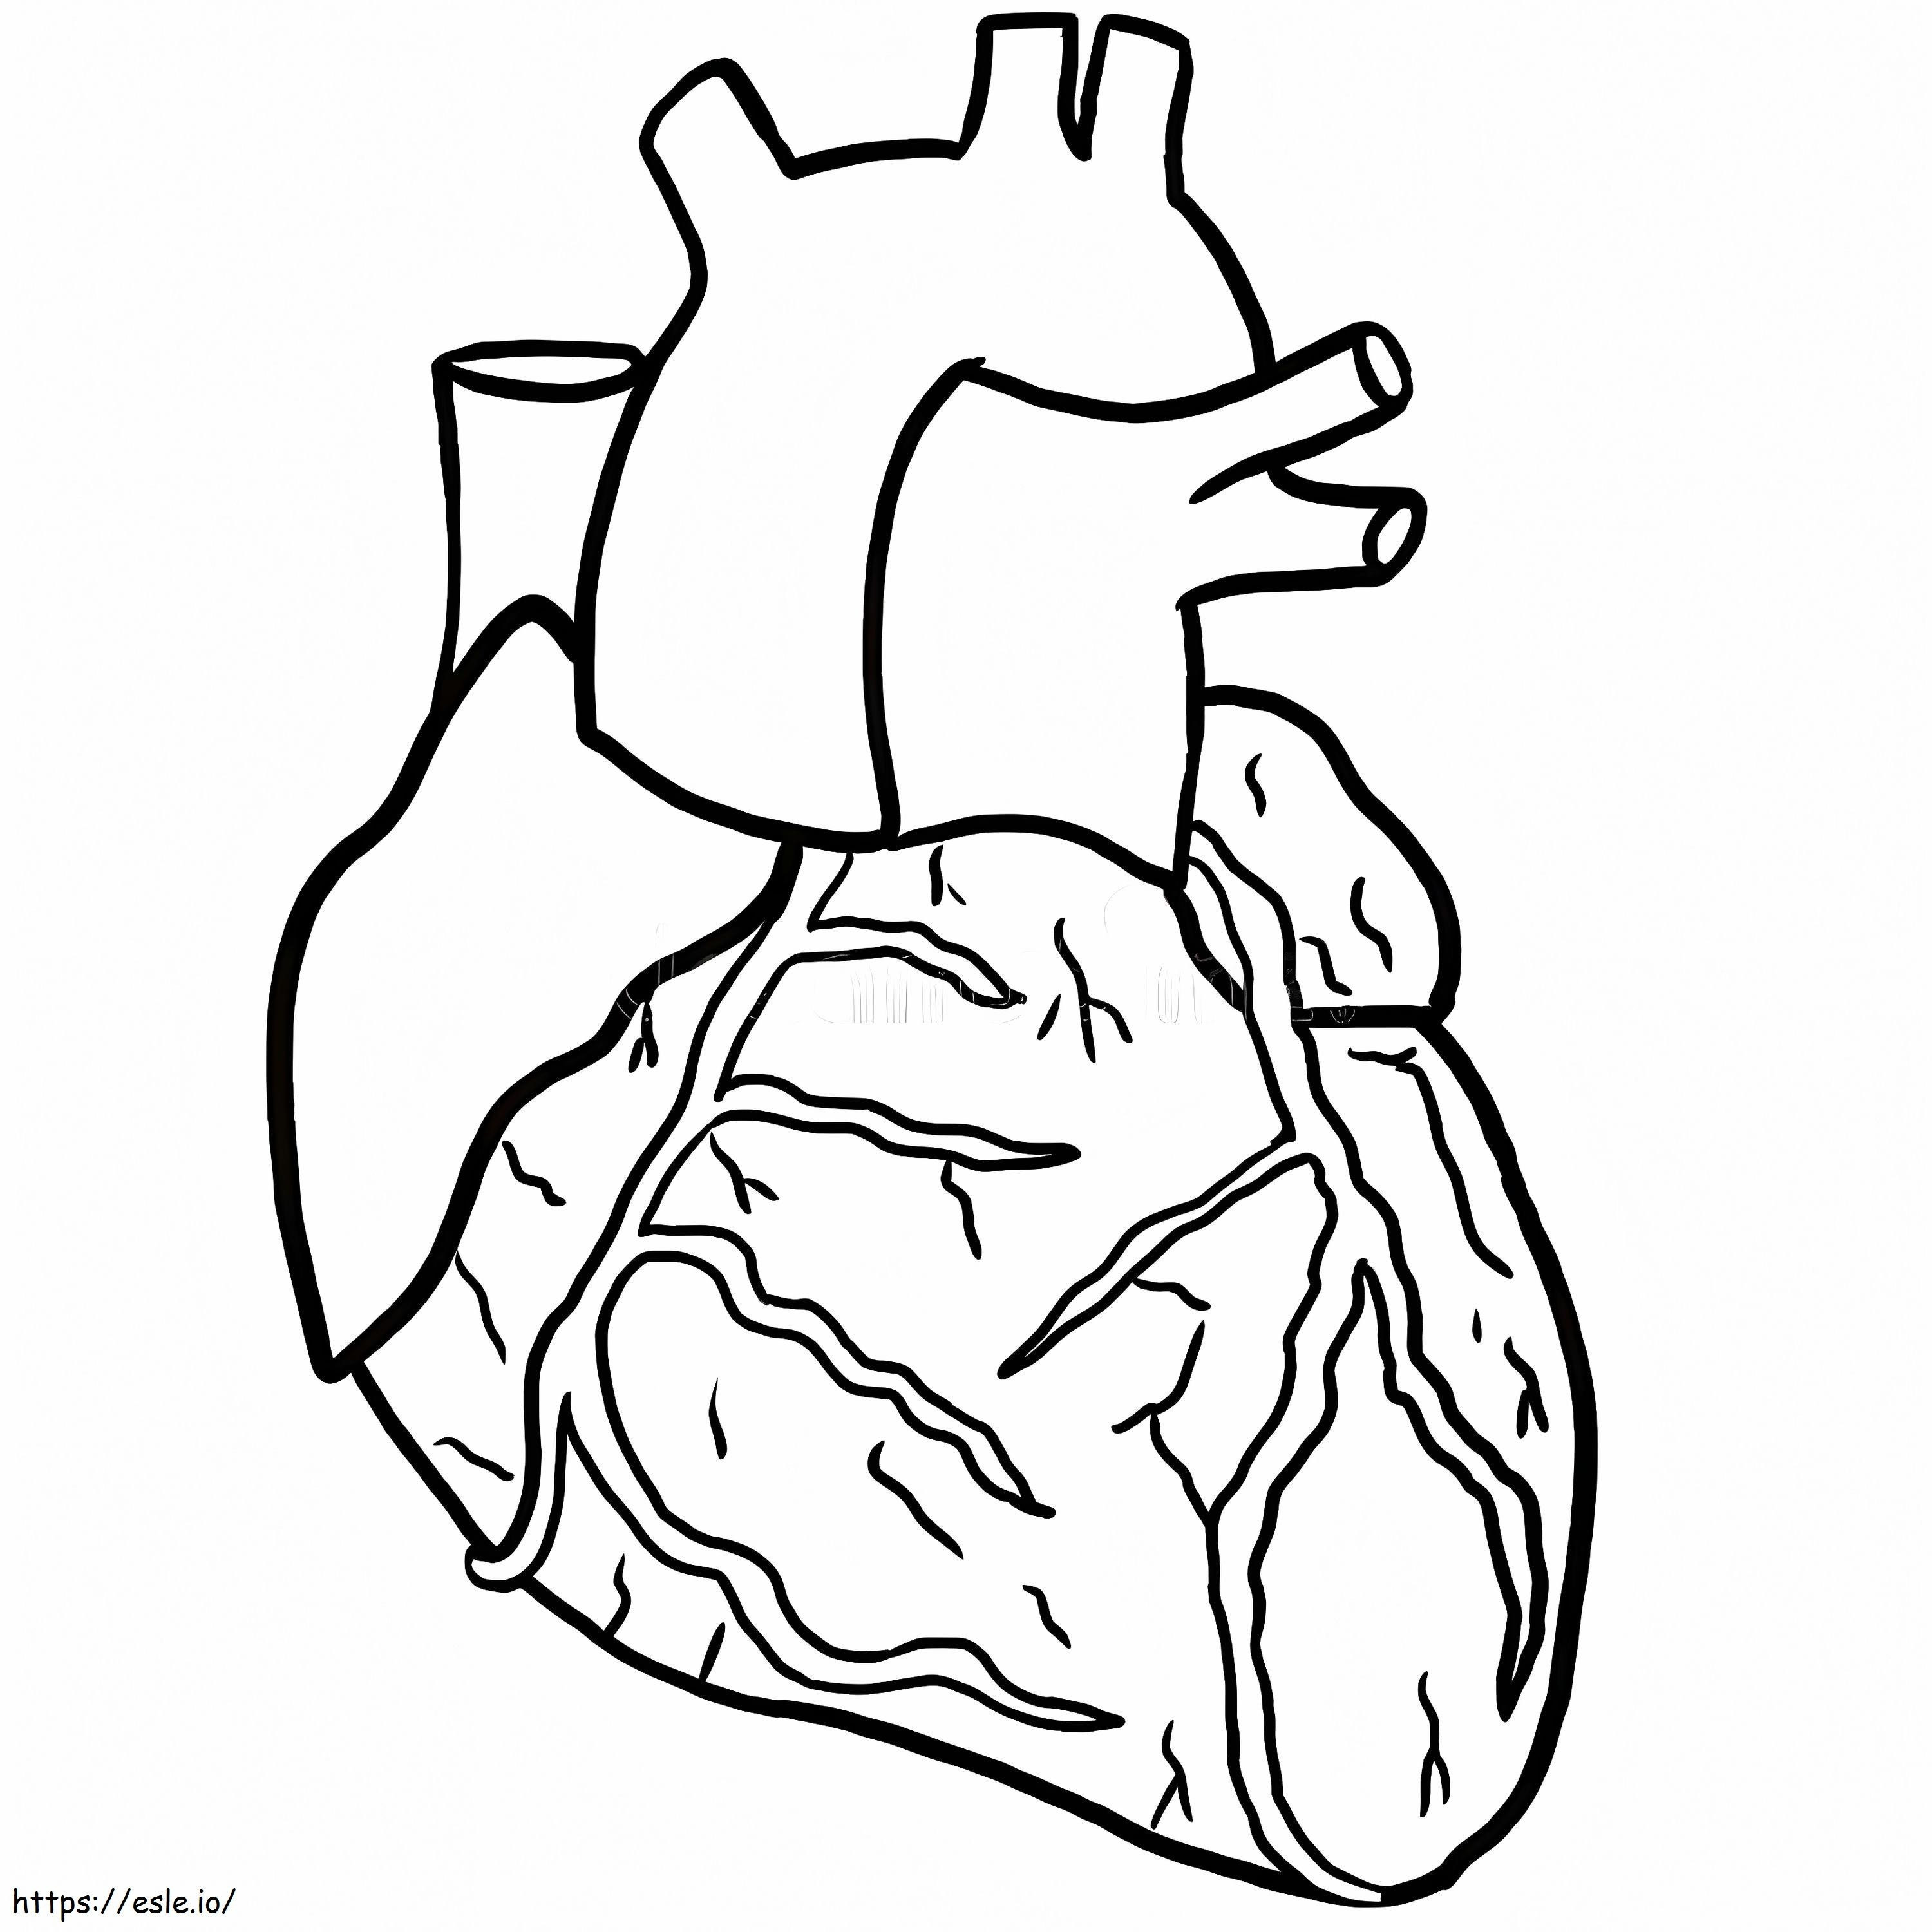 Jantung Anatomi Gambar Mewarnai